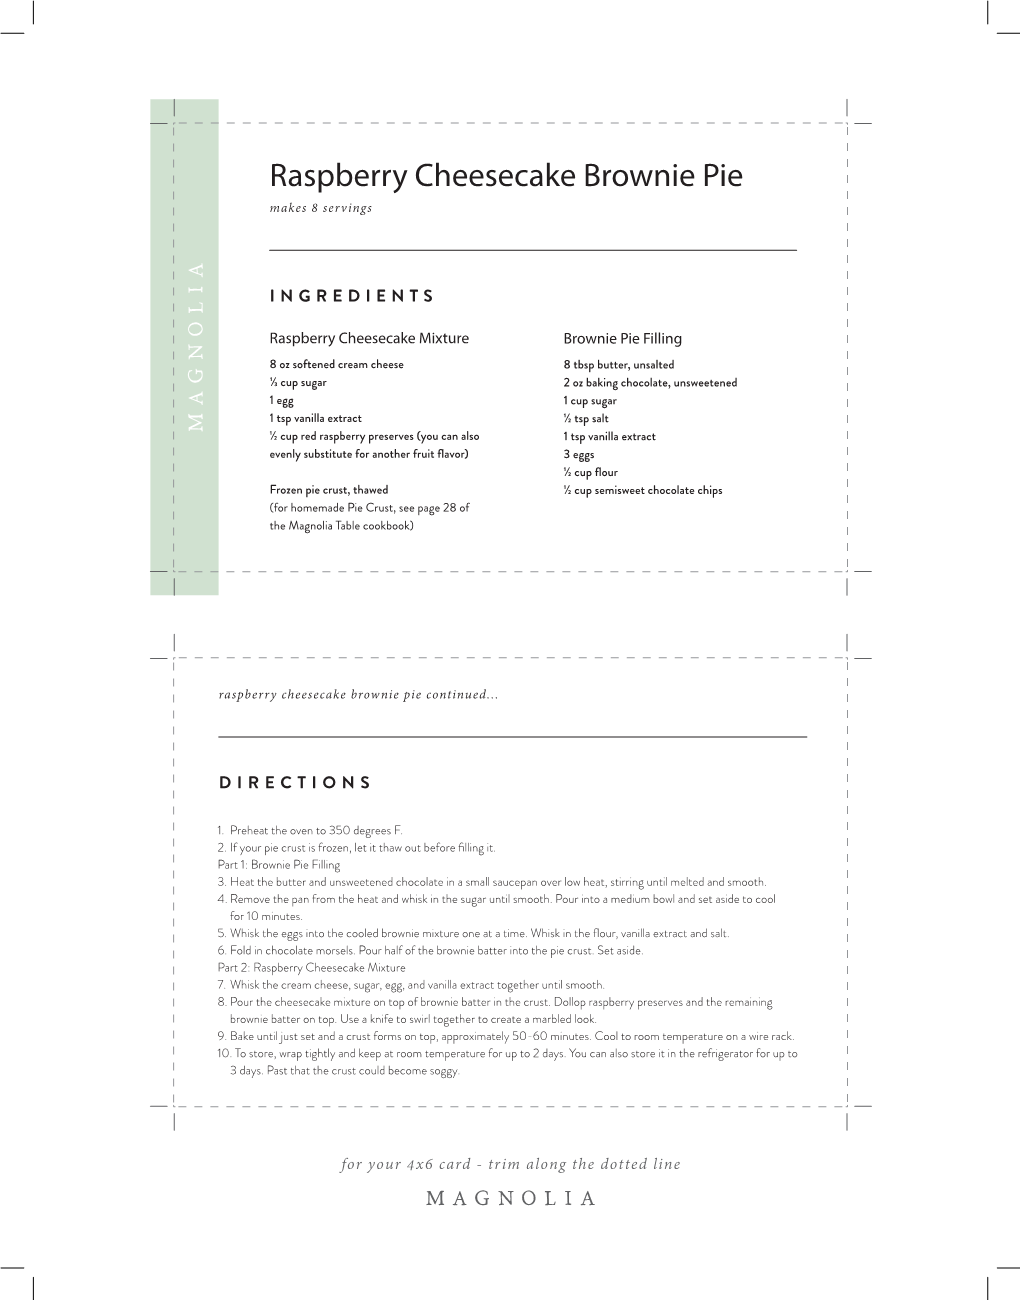 Raspberry Cheesecake Brownie Pie Makes 8 Servings